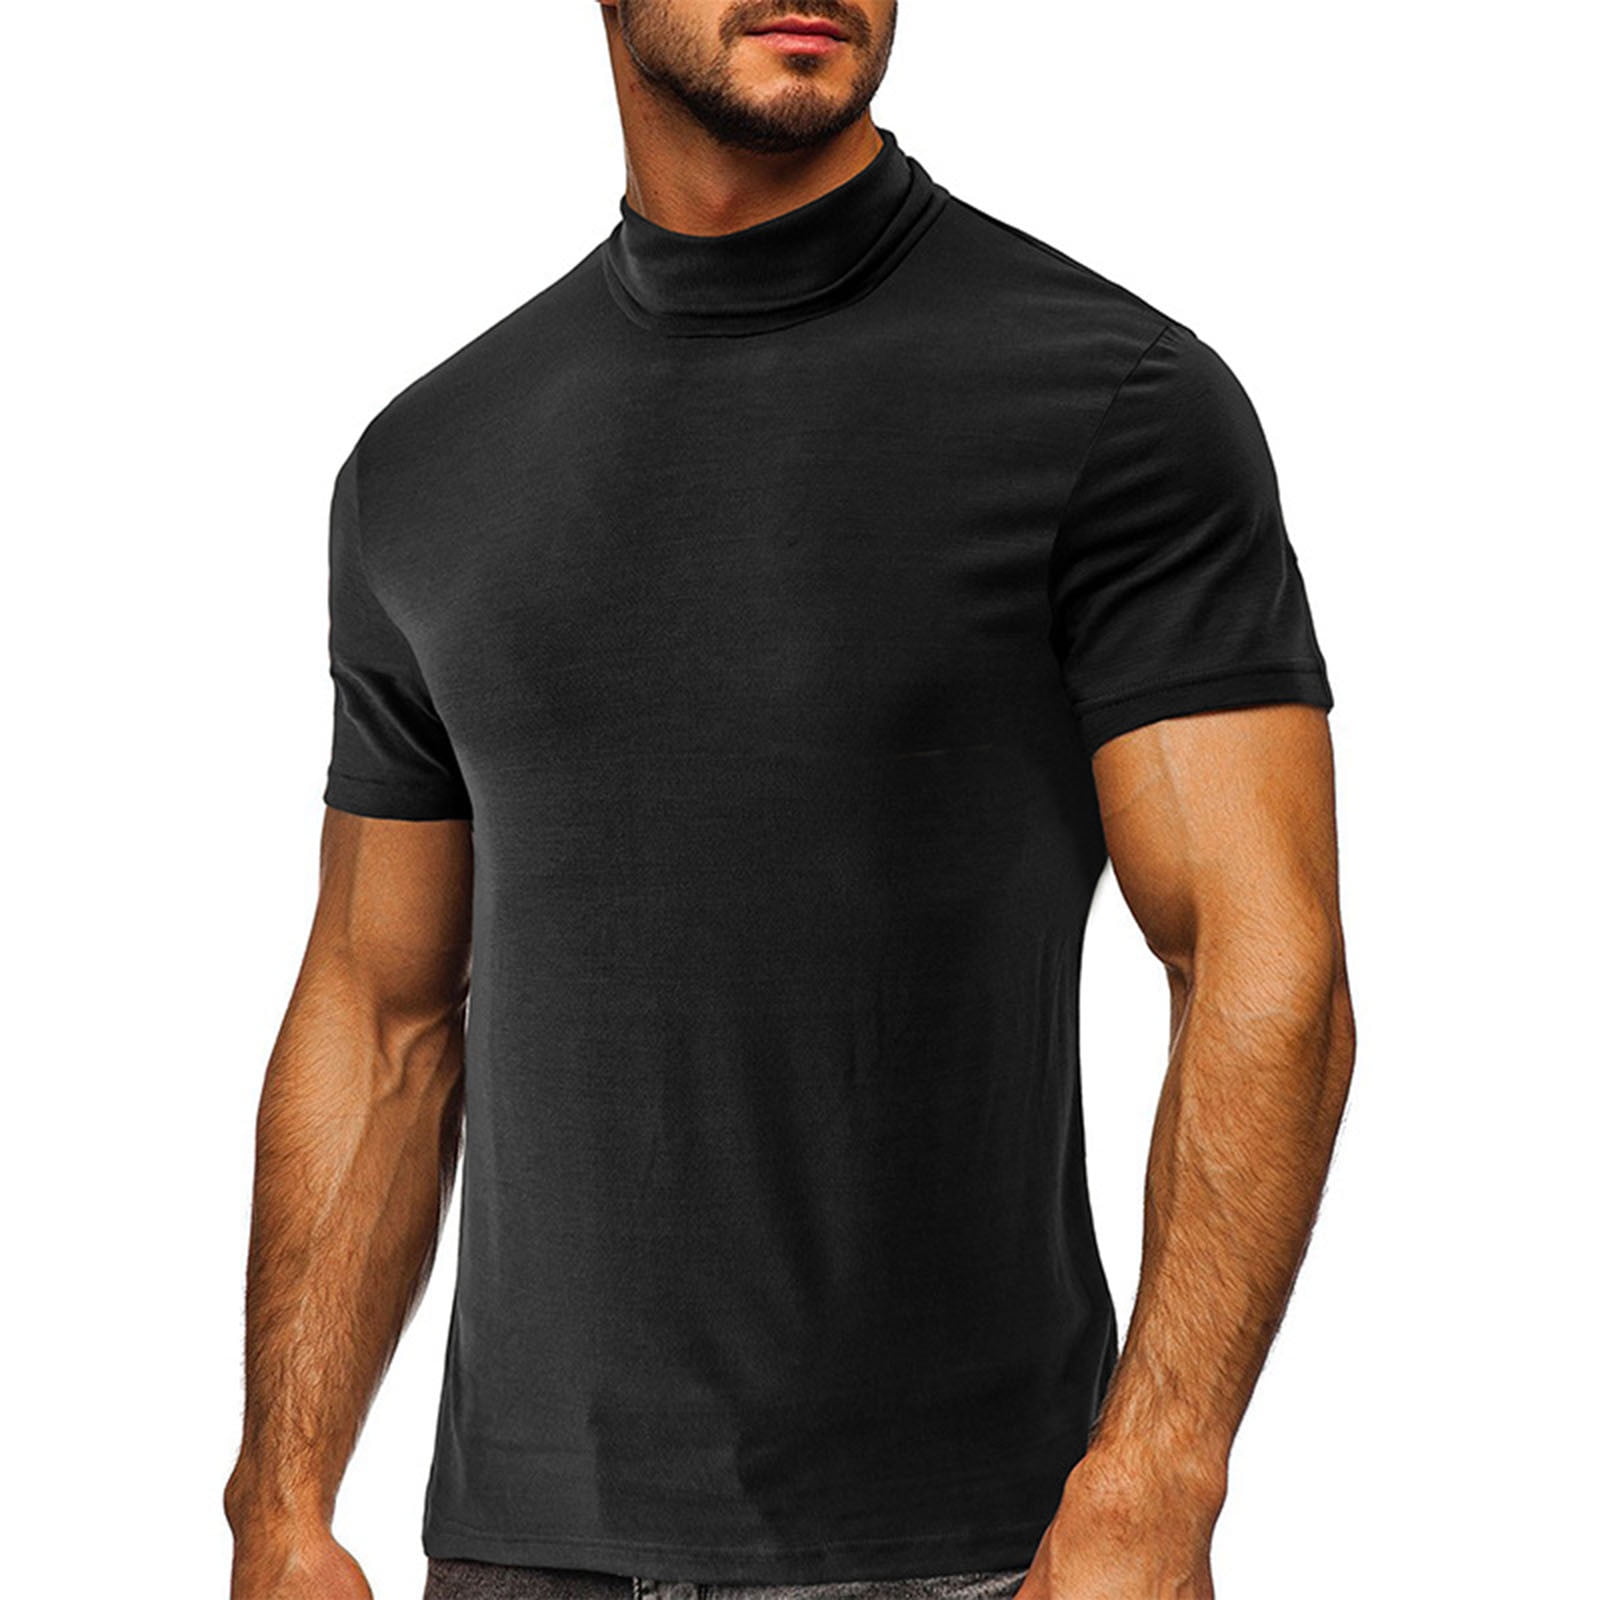 RYRJJ Mens Mock Turtleneck T-Shirt Short Sleeve Pullover Basic Designed  Undershirt Stretch Lightweight Slim Fit Athletic Muscle Tops(Black,S)